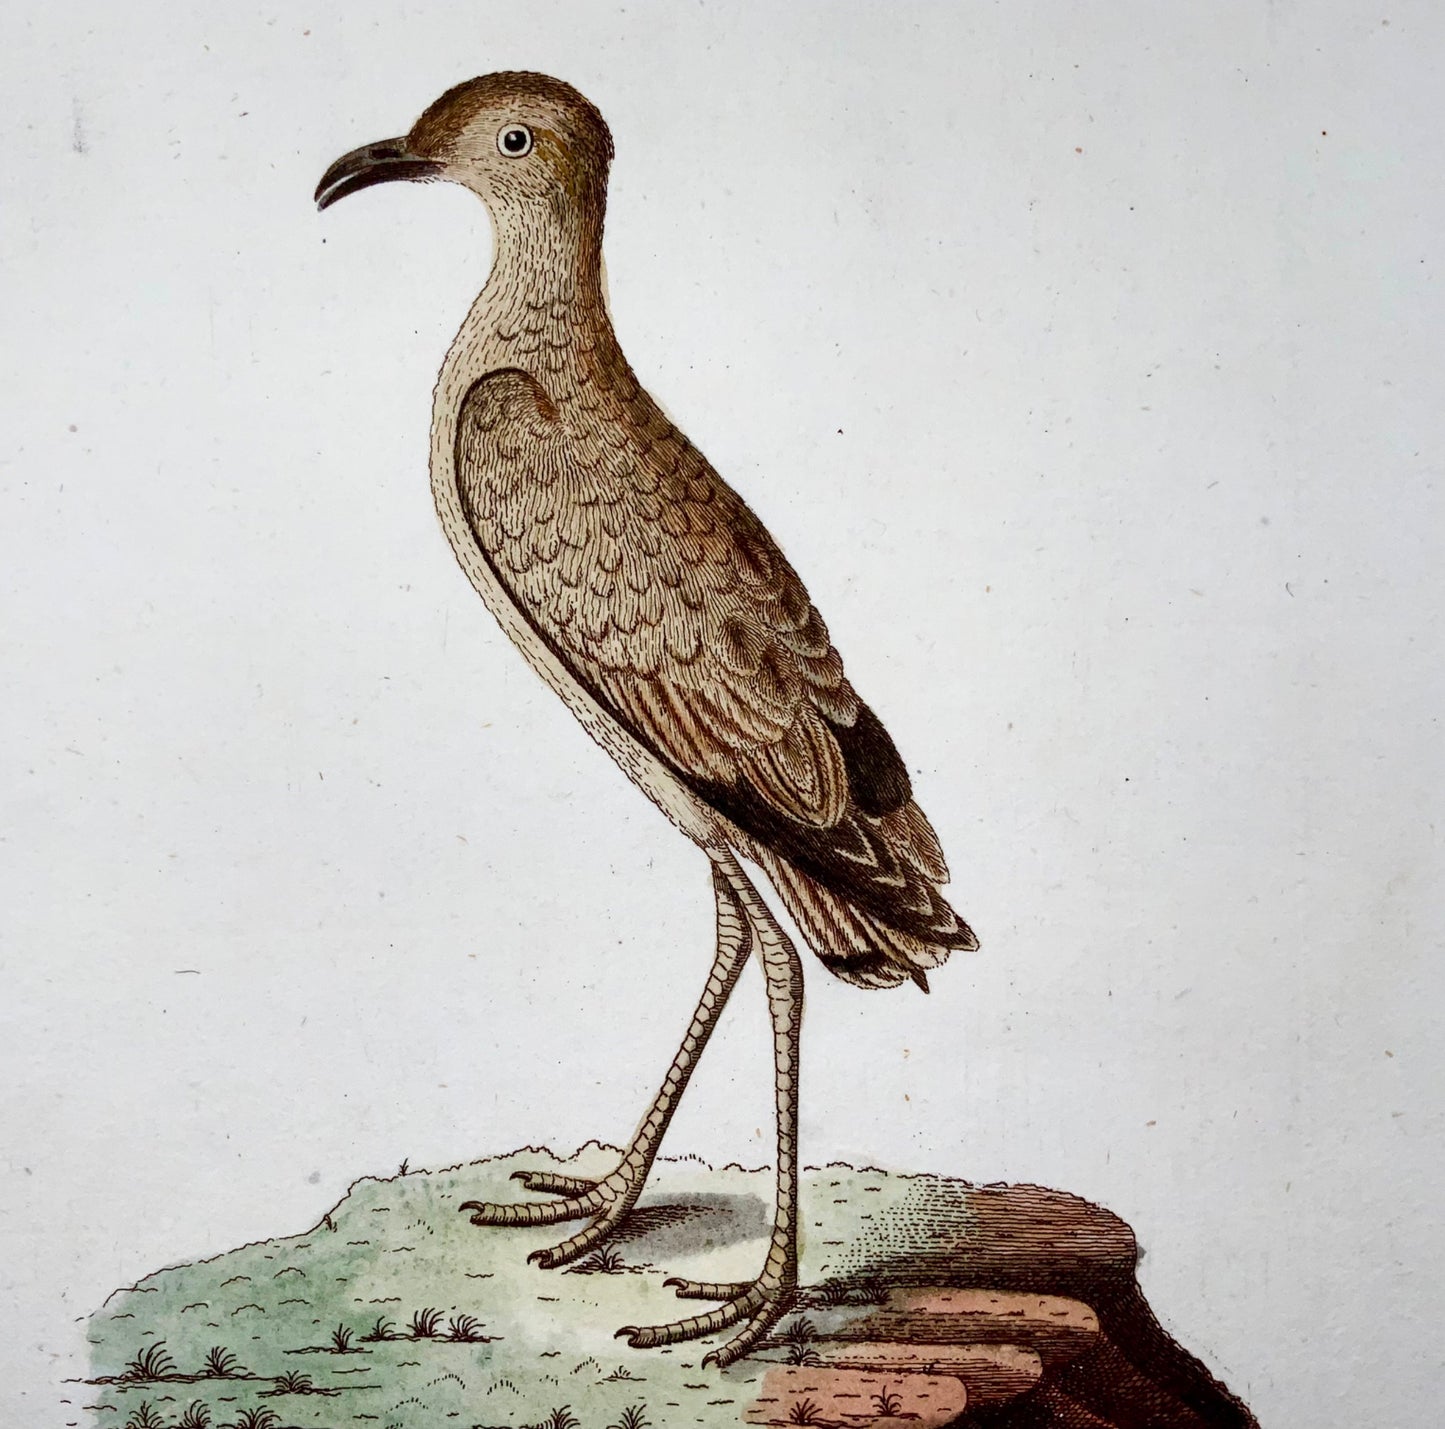 1793 John Latham, Plover, ornitologia, raro in quarto, col. incisione su rame